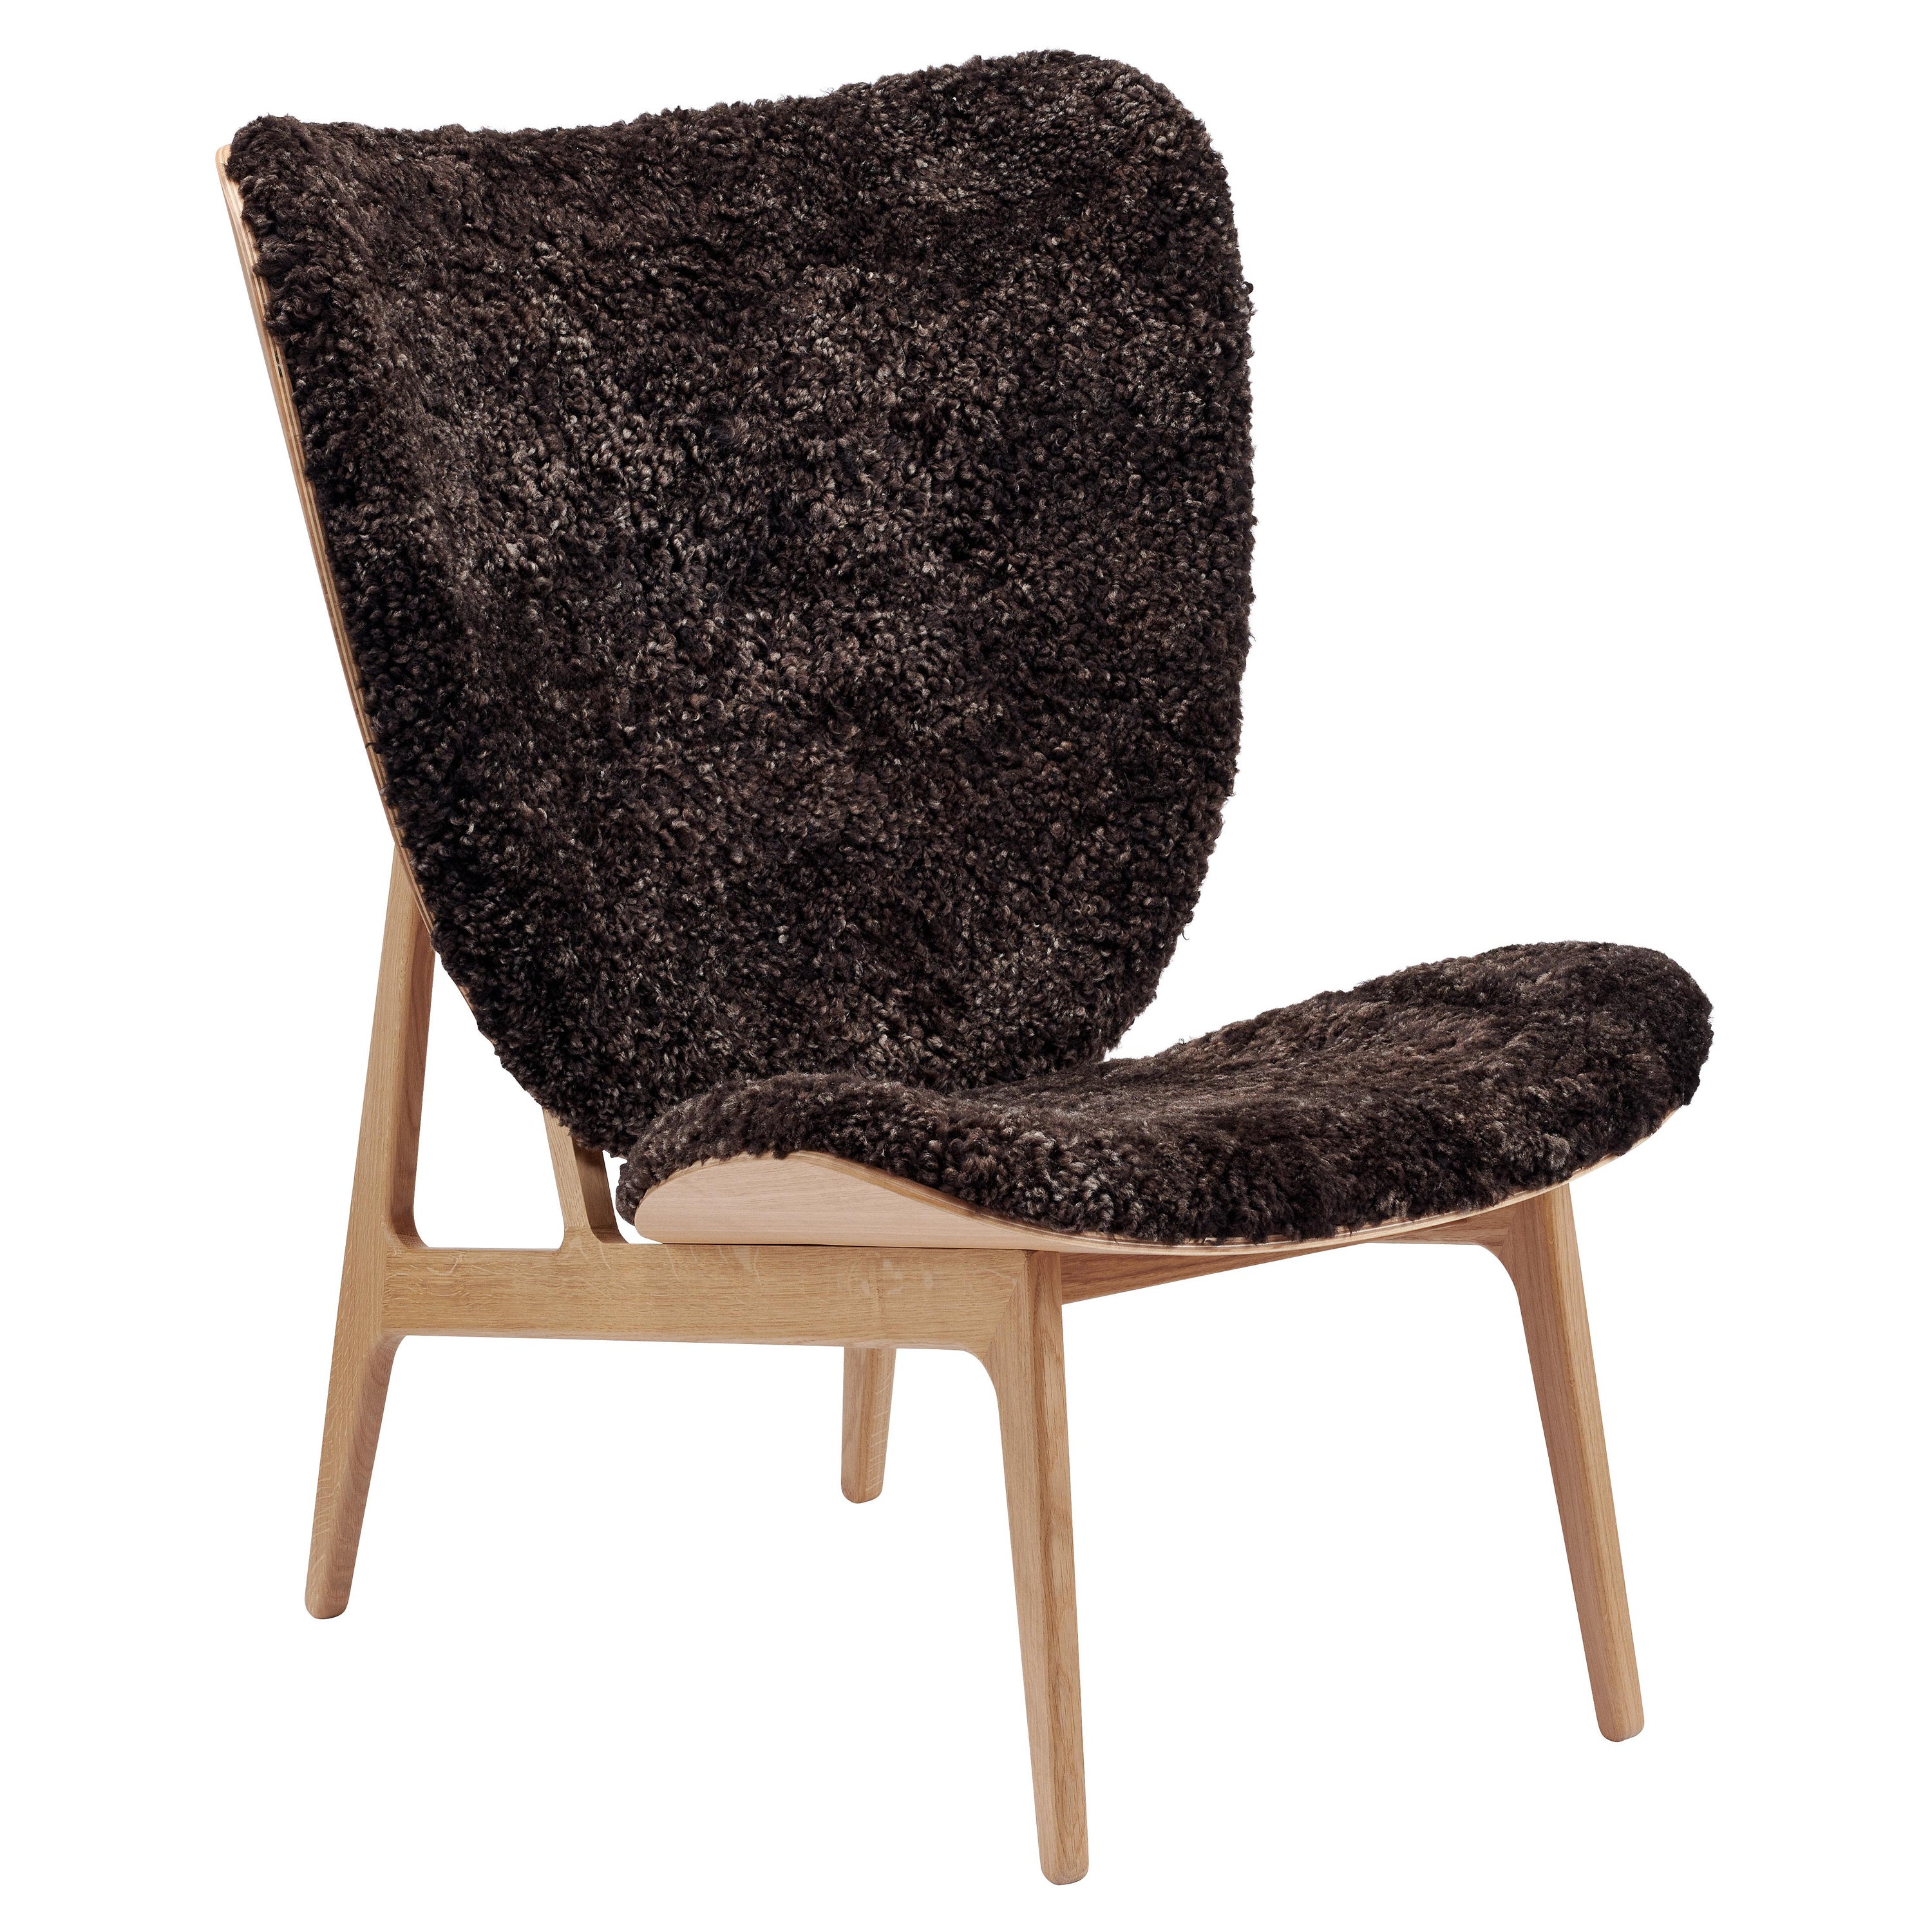 Chaise longue en bois "Elephant" de Norr11, chêne naturel, peau de mouton en vente